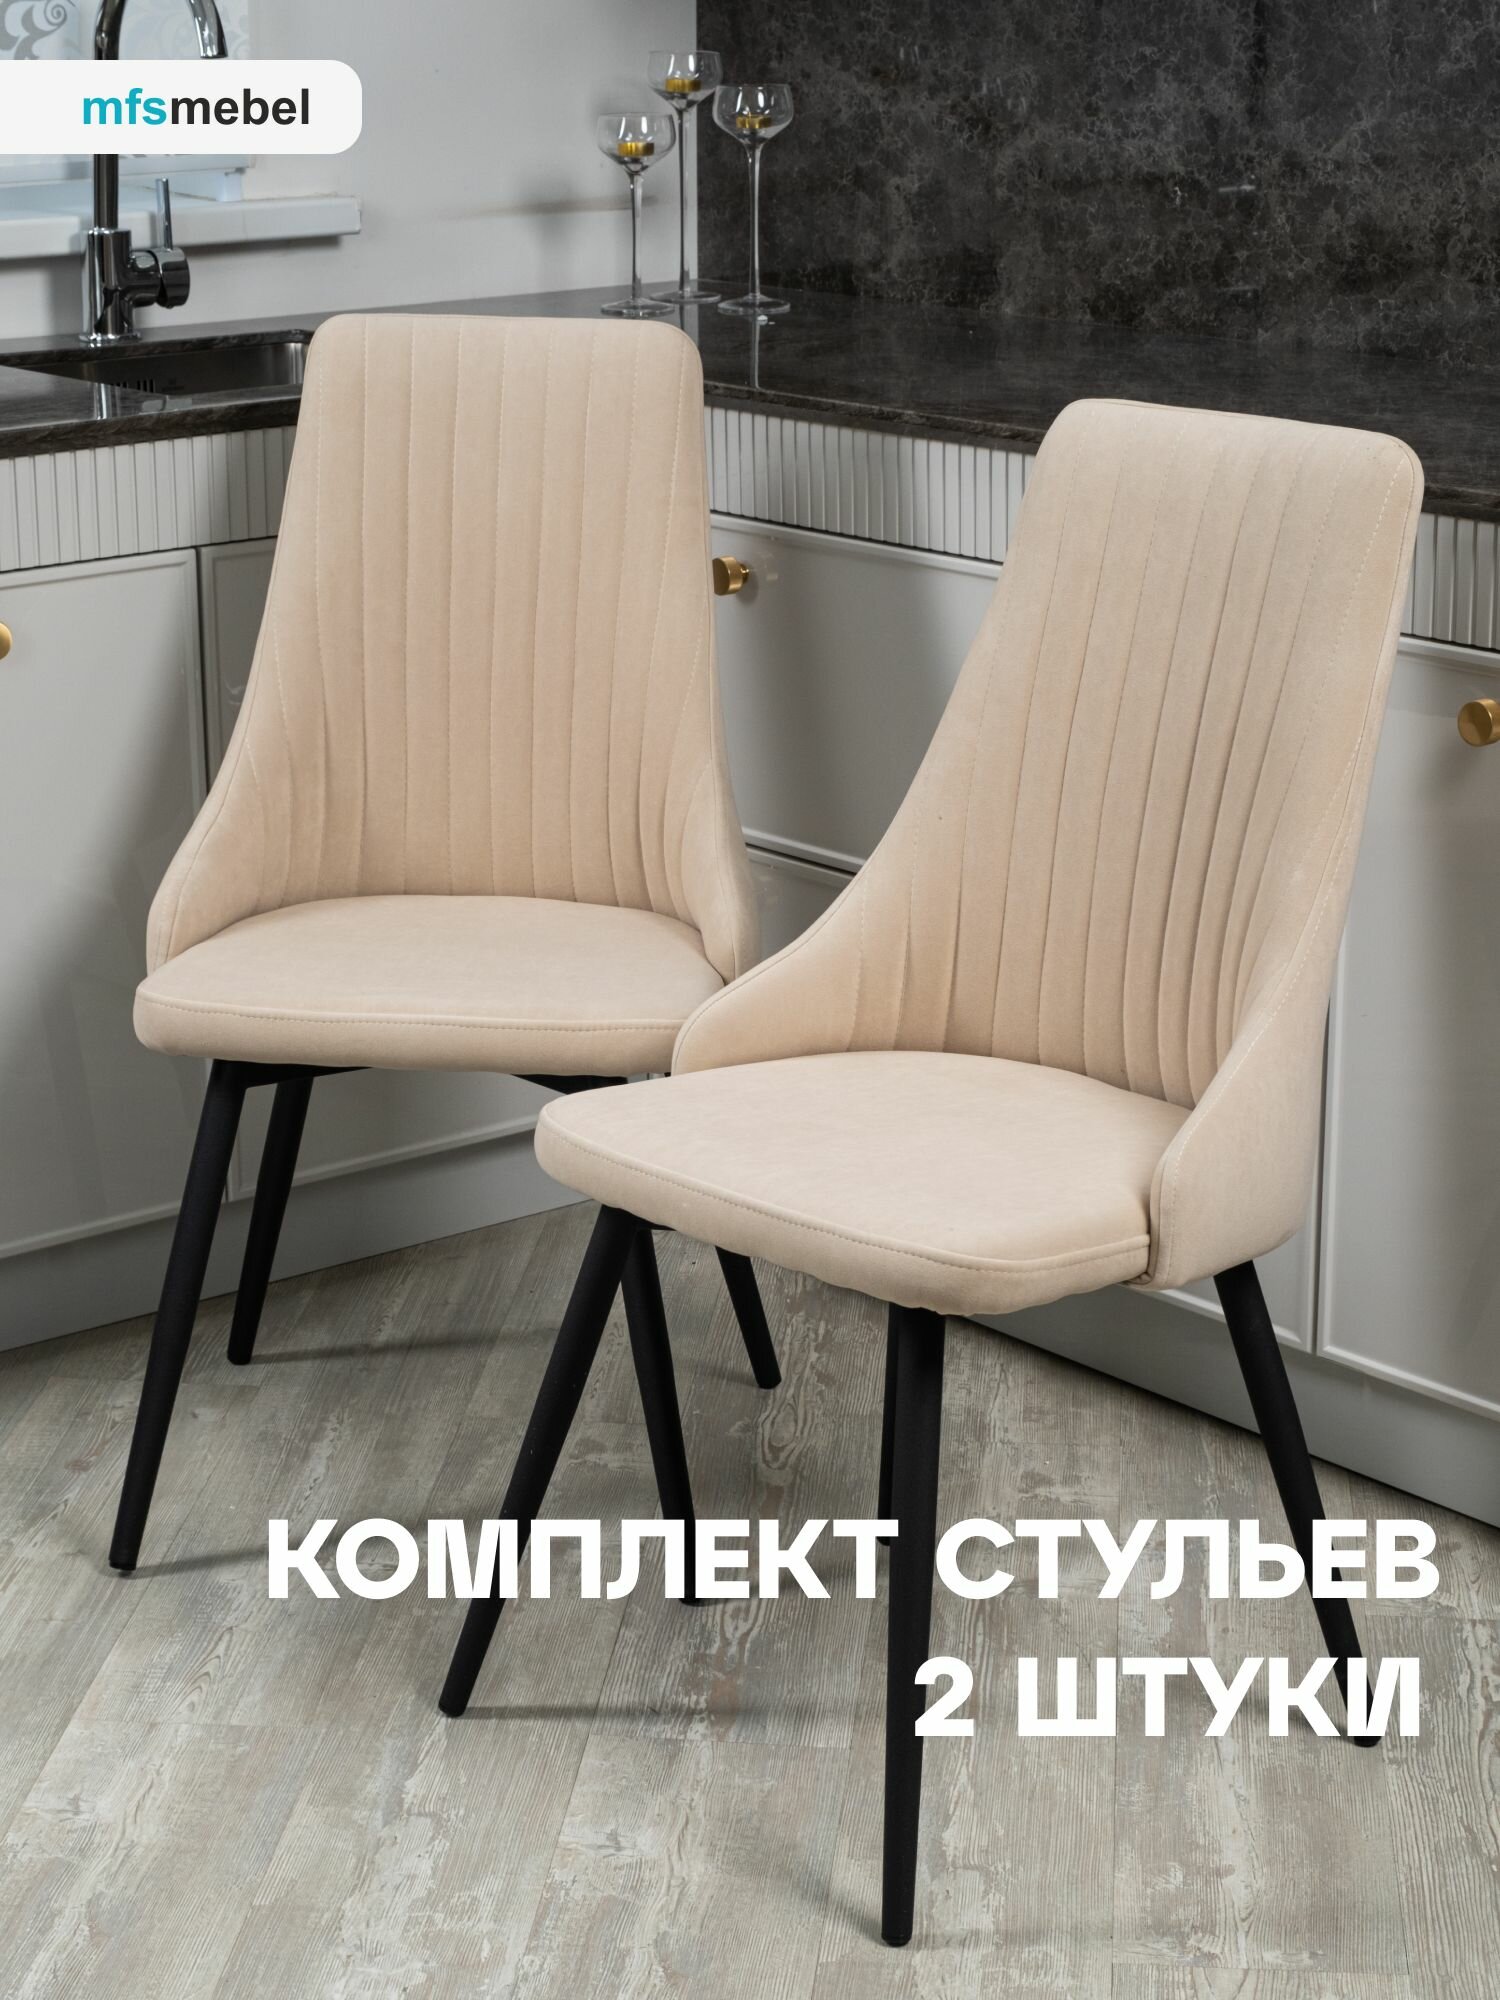 Комплект стульев для кухни и гостиной Руссо 2 шт, бежевый